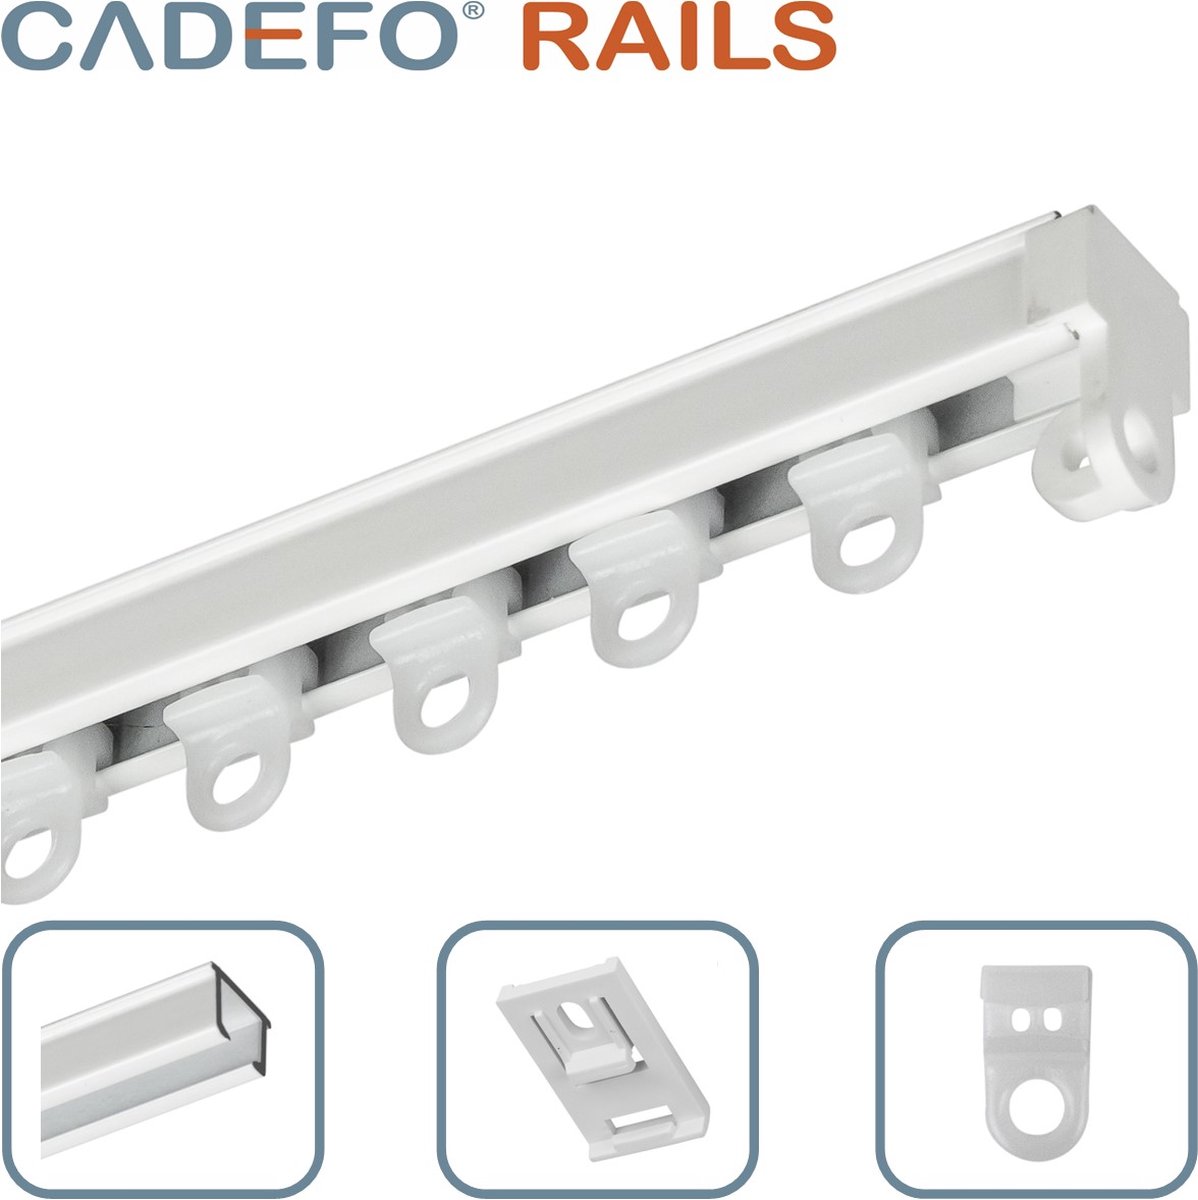 CADEFO RAILS (451 - 500 cm) Gordijnrails - Compleet op maat! - UIT 1 STUK - Leverbaar tot 6 meter - Plafondbevestiging - Lengte 493 cm